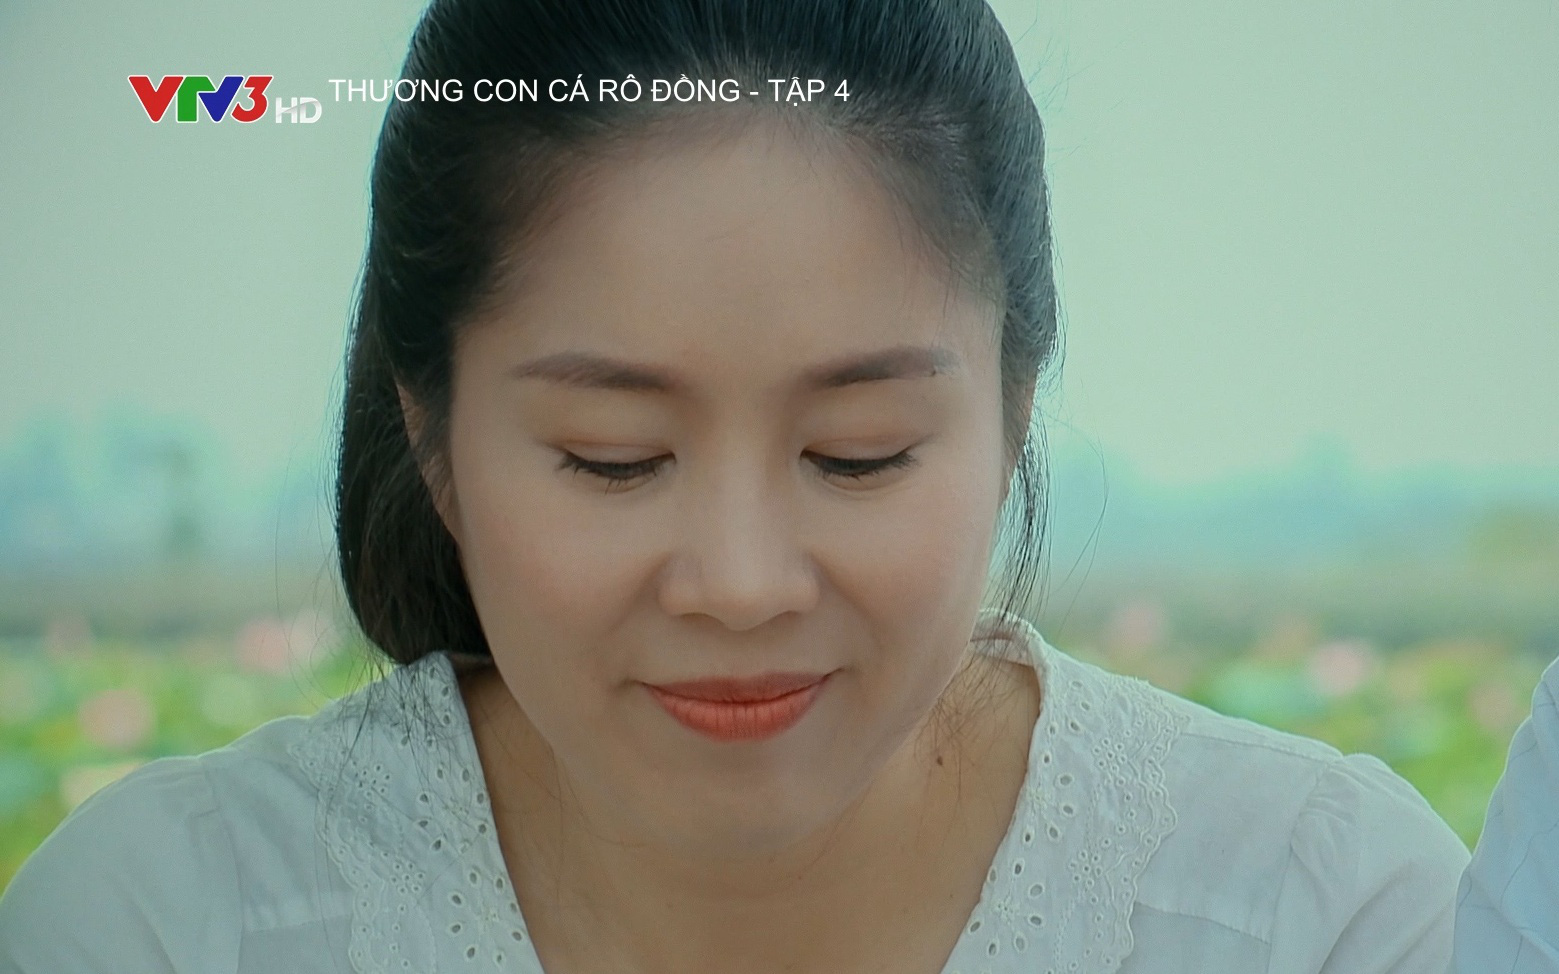 Lê Phương làm "Chị Hai quốc dân" trong phim VTV, nhan sắc mặn mà sau khi sinh con 